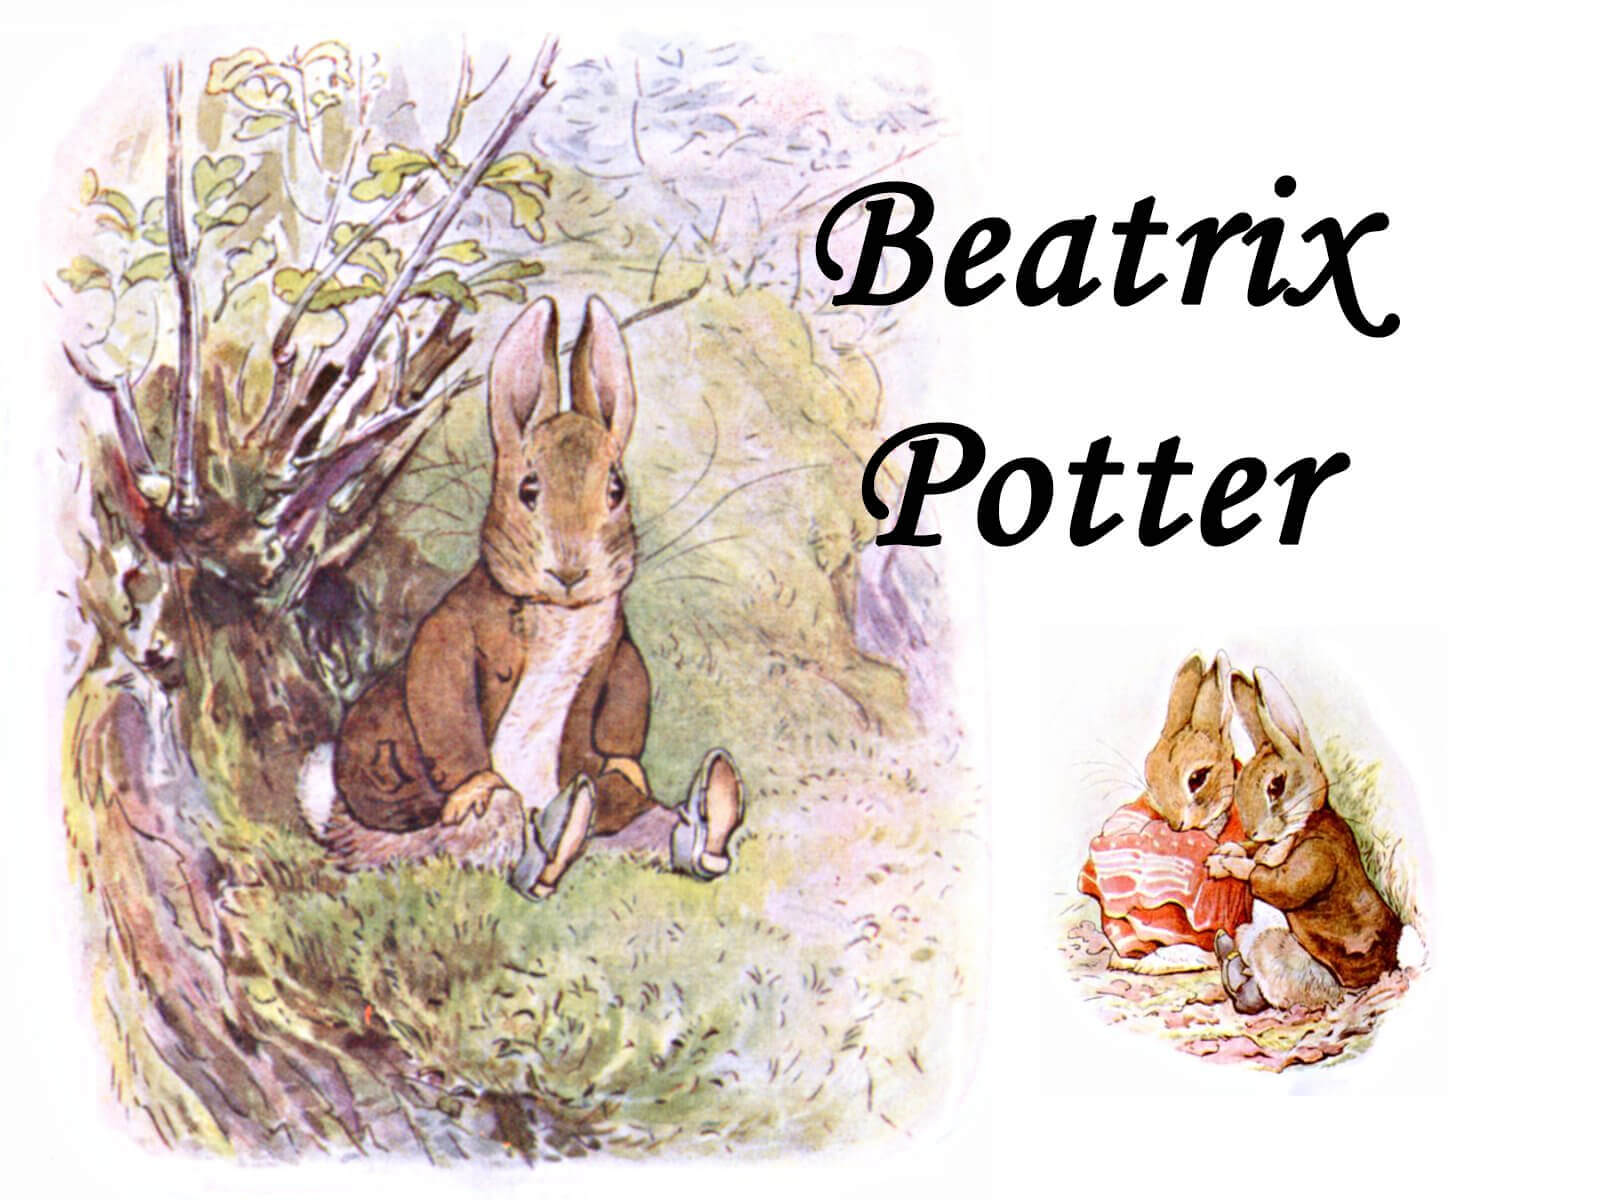 Beatrix Potter Facts